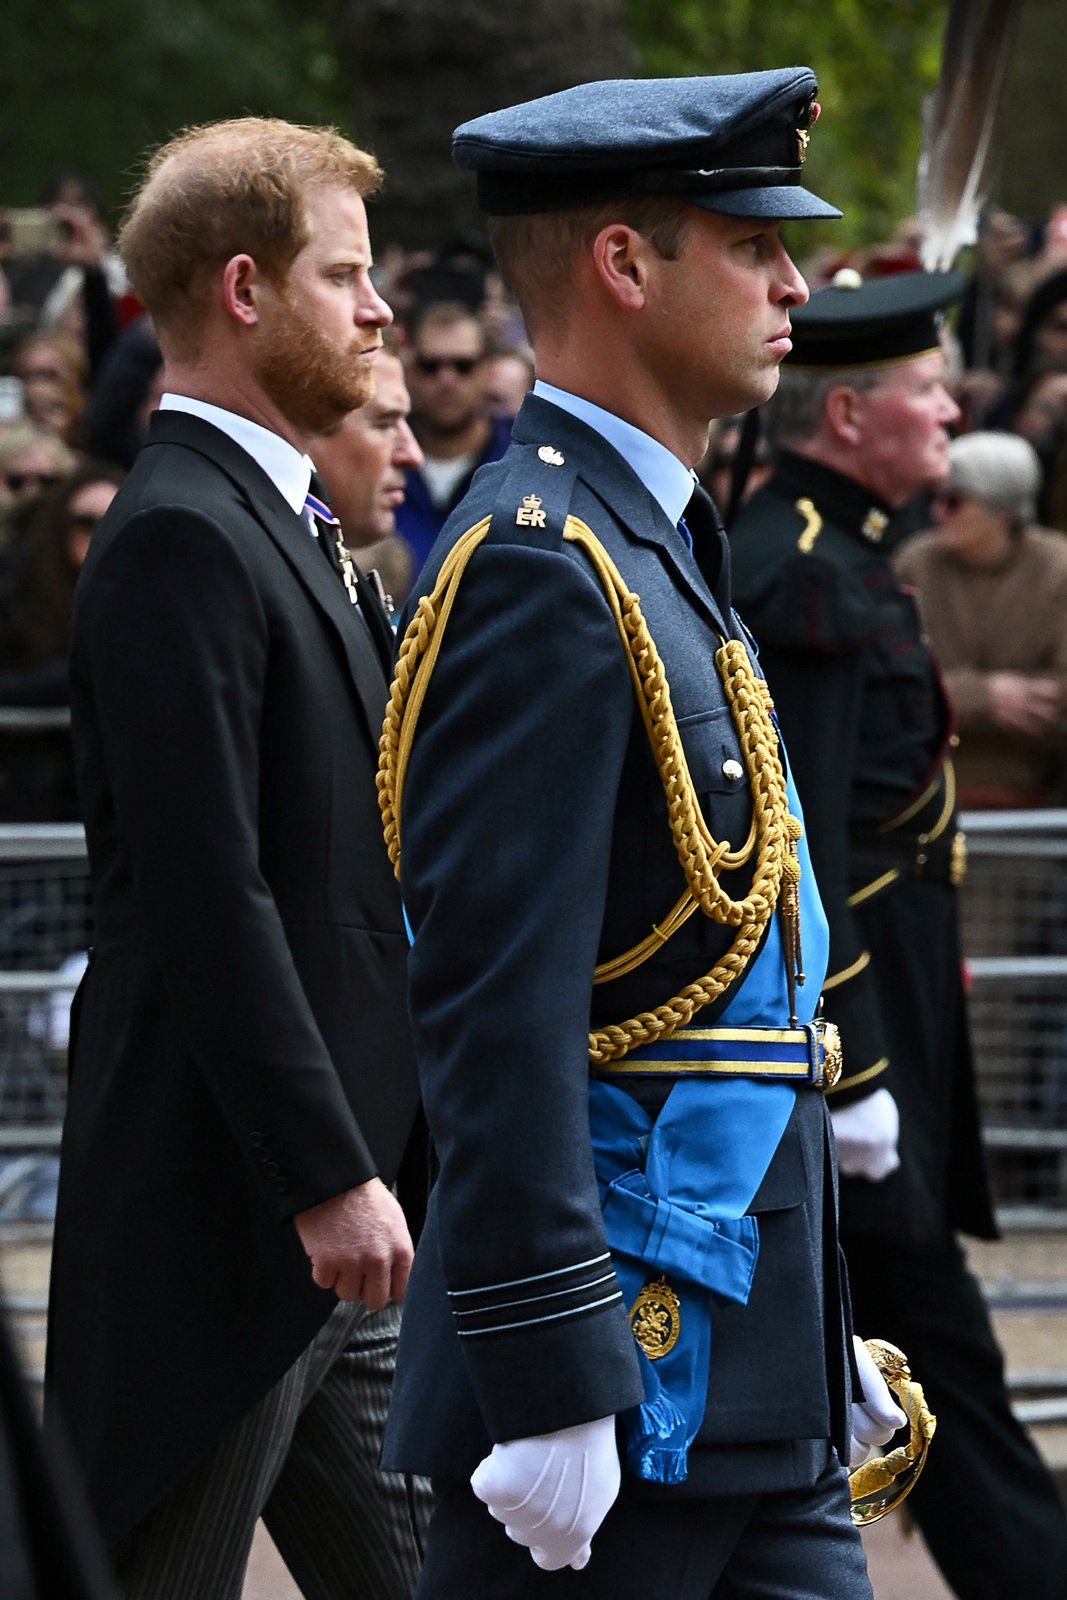 Pohřeb královny Alžběty II. - princ Harry s princem Williamem